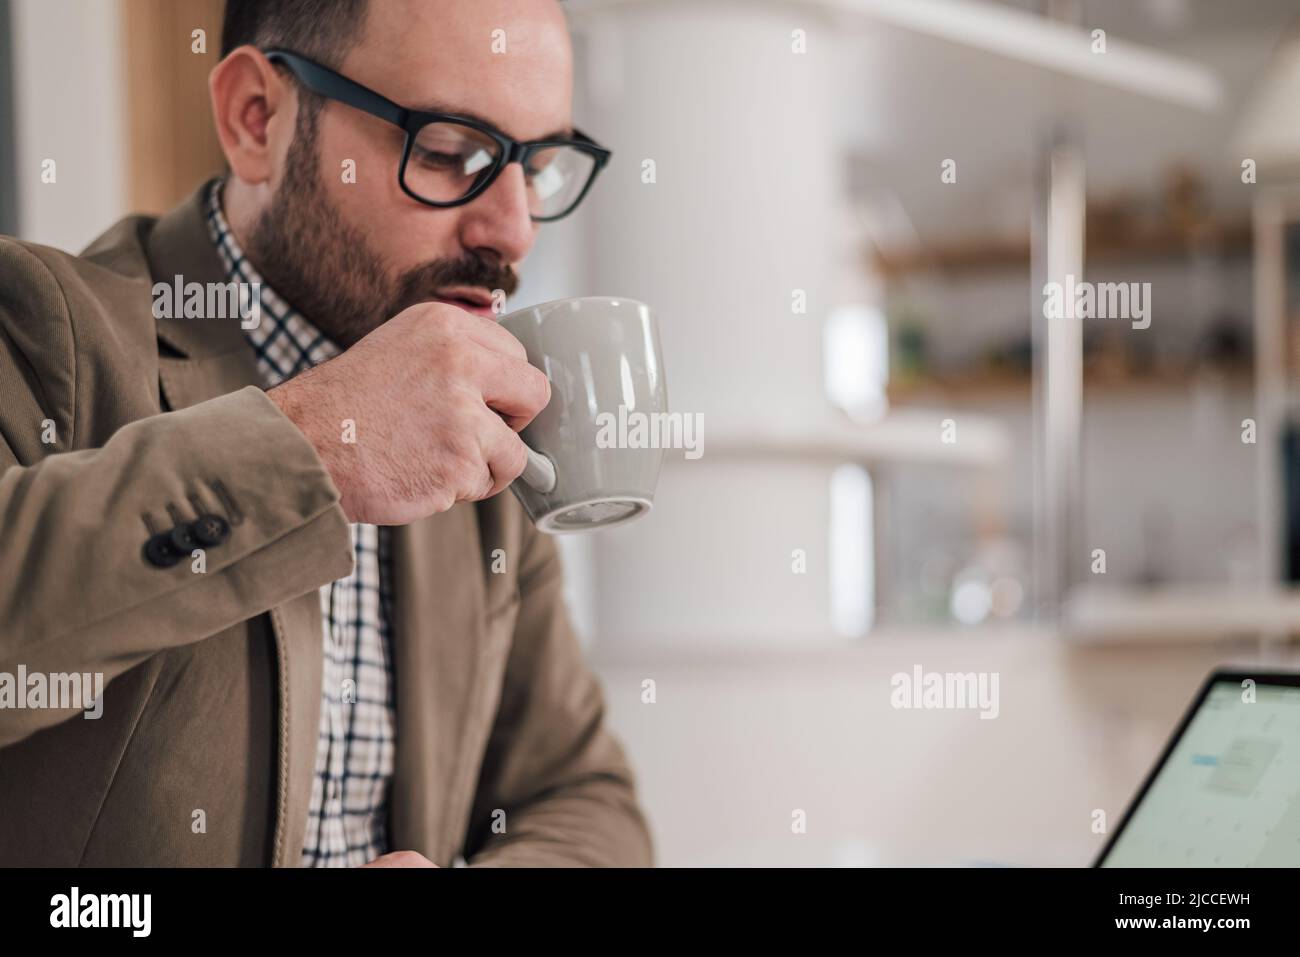 Un jeune homme d'affaires boit du café tout en travaillant. Le responsable masculin porte des lunettes. Il apprécie les rafraîchissements à son bureau. Banque D'Images